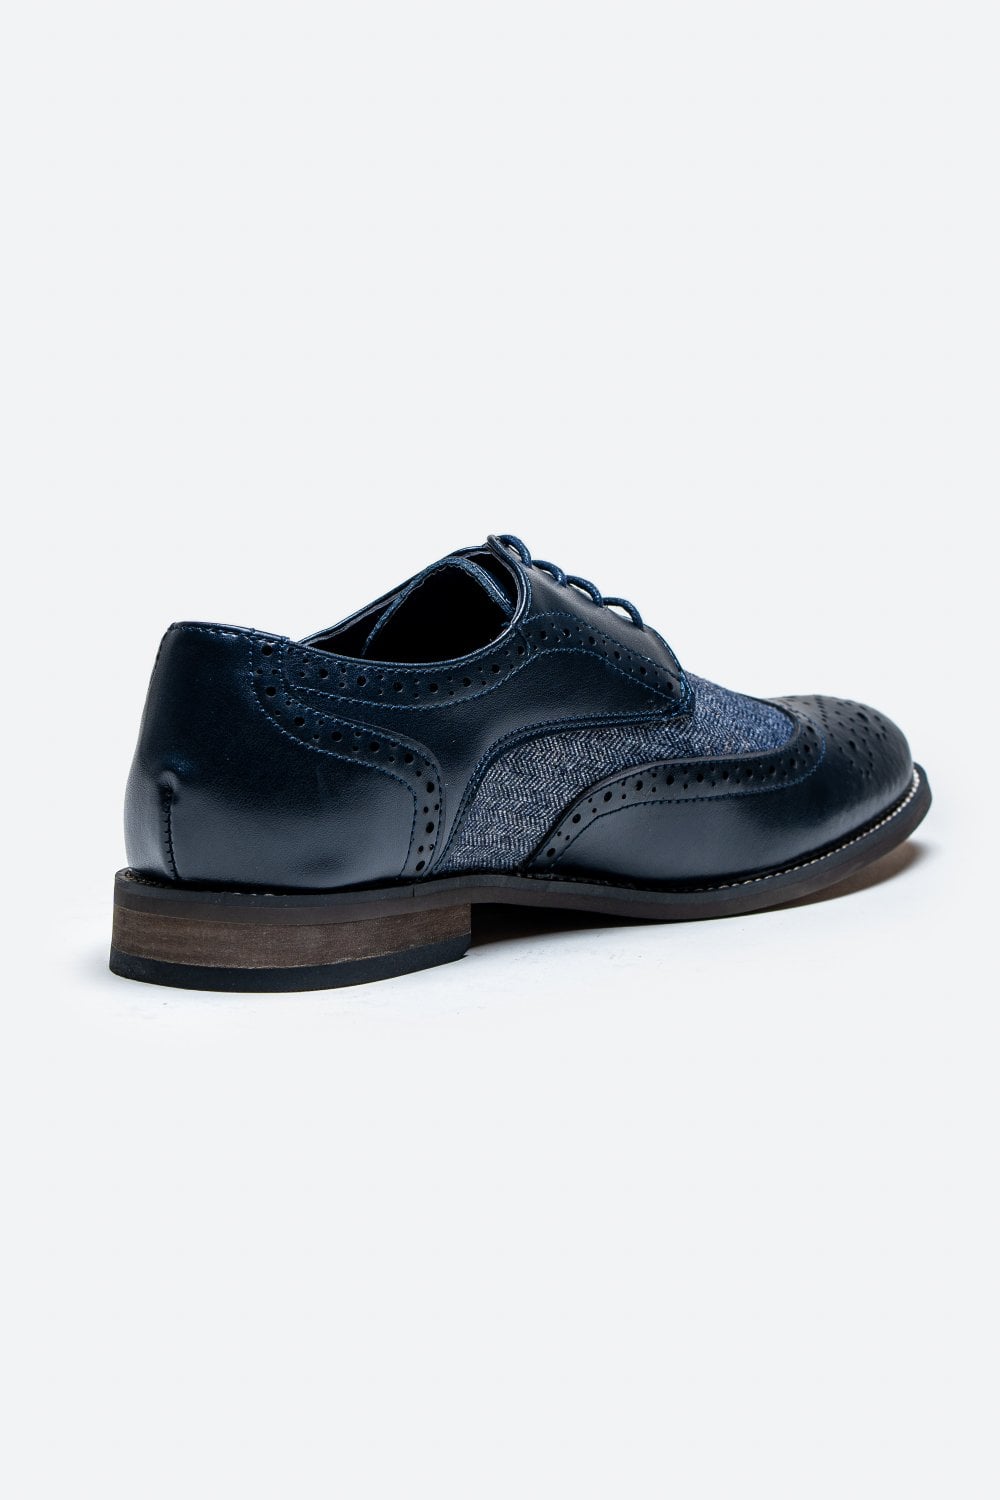 Cavani Oliver Tweed Schoenen - Navy - schoenen